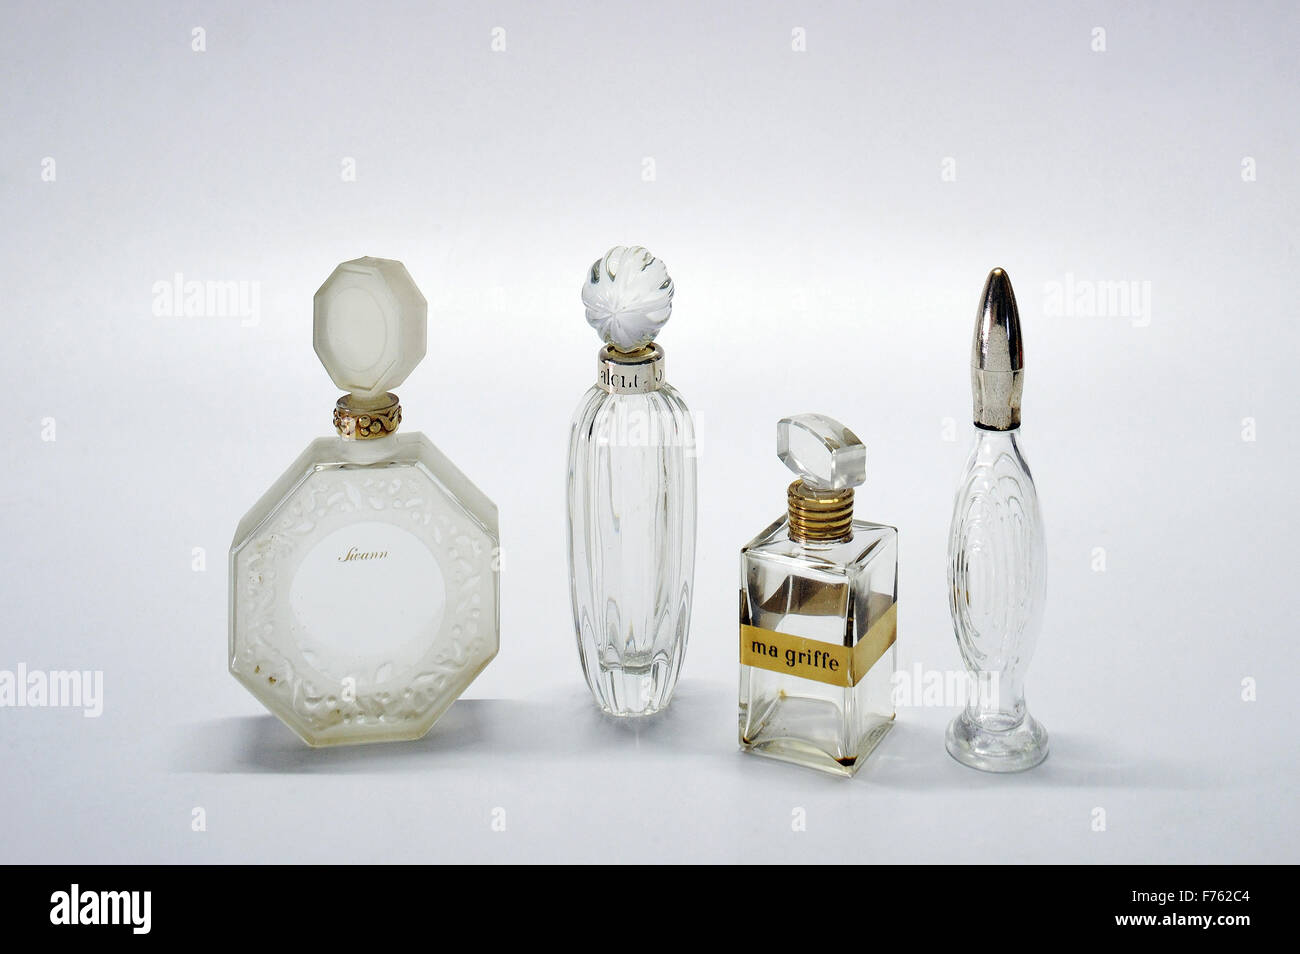 glass bottles, old bottles, antique bottles, vintage bottles, perfume bottles, ma griffe glass perfume bottle Stock Photo